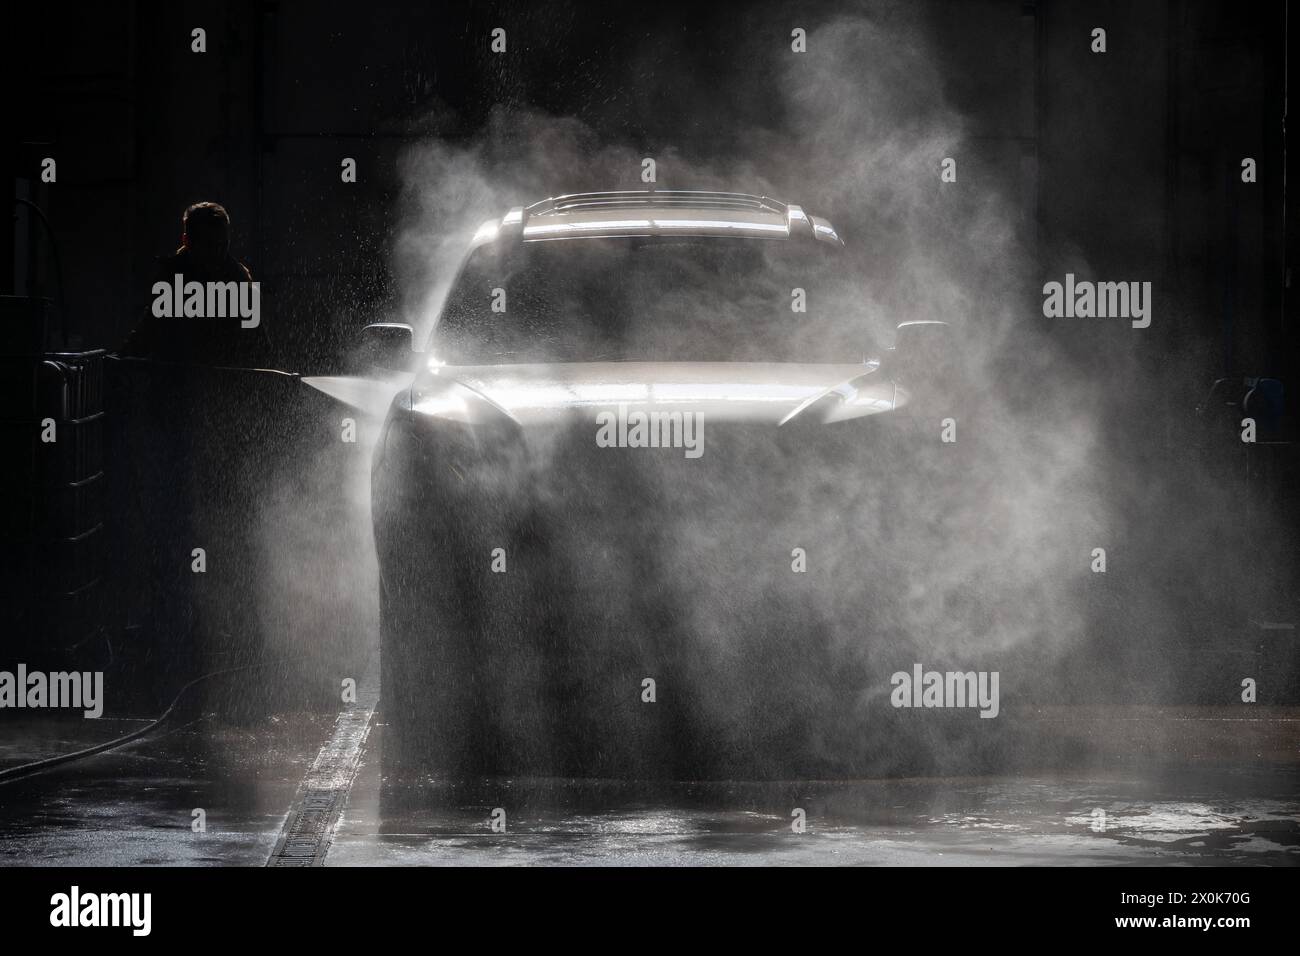 Osserva la silhouette di una persona che lava un'auto con un getto d'acqua in un centro di assistenza auto. La scena viene illuminata dalla retroilluminazione, evidenziando l Foto Stock